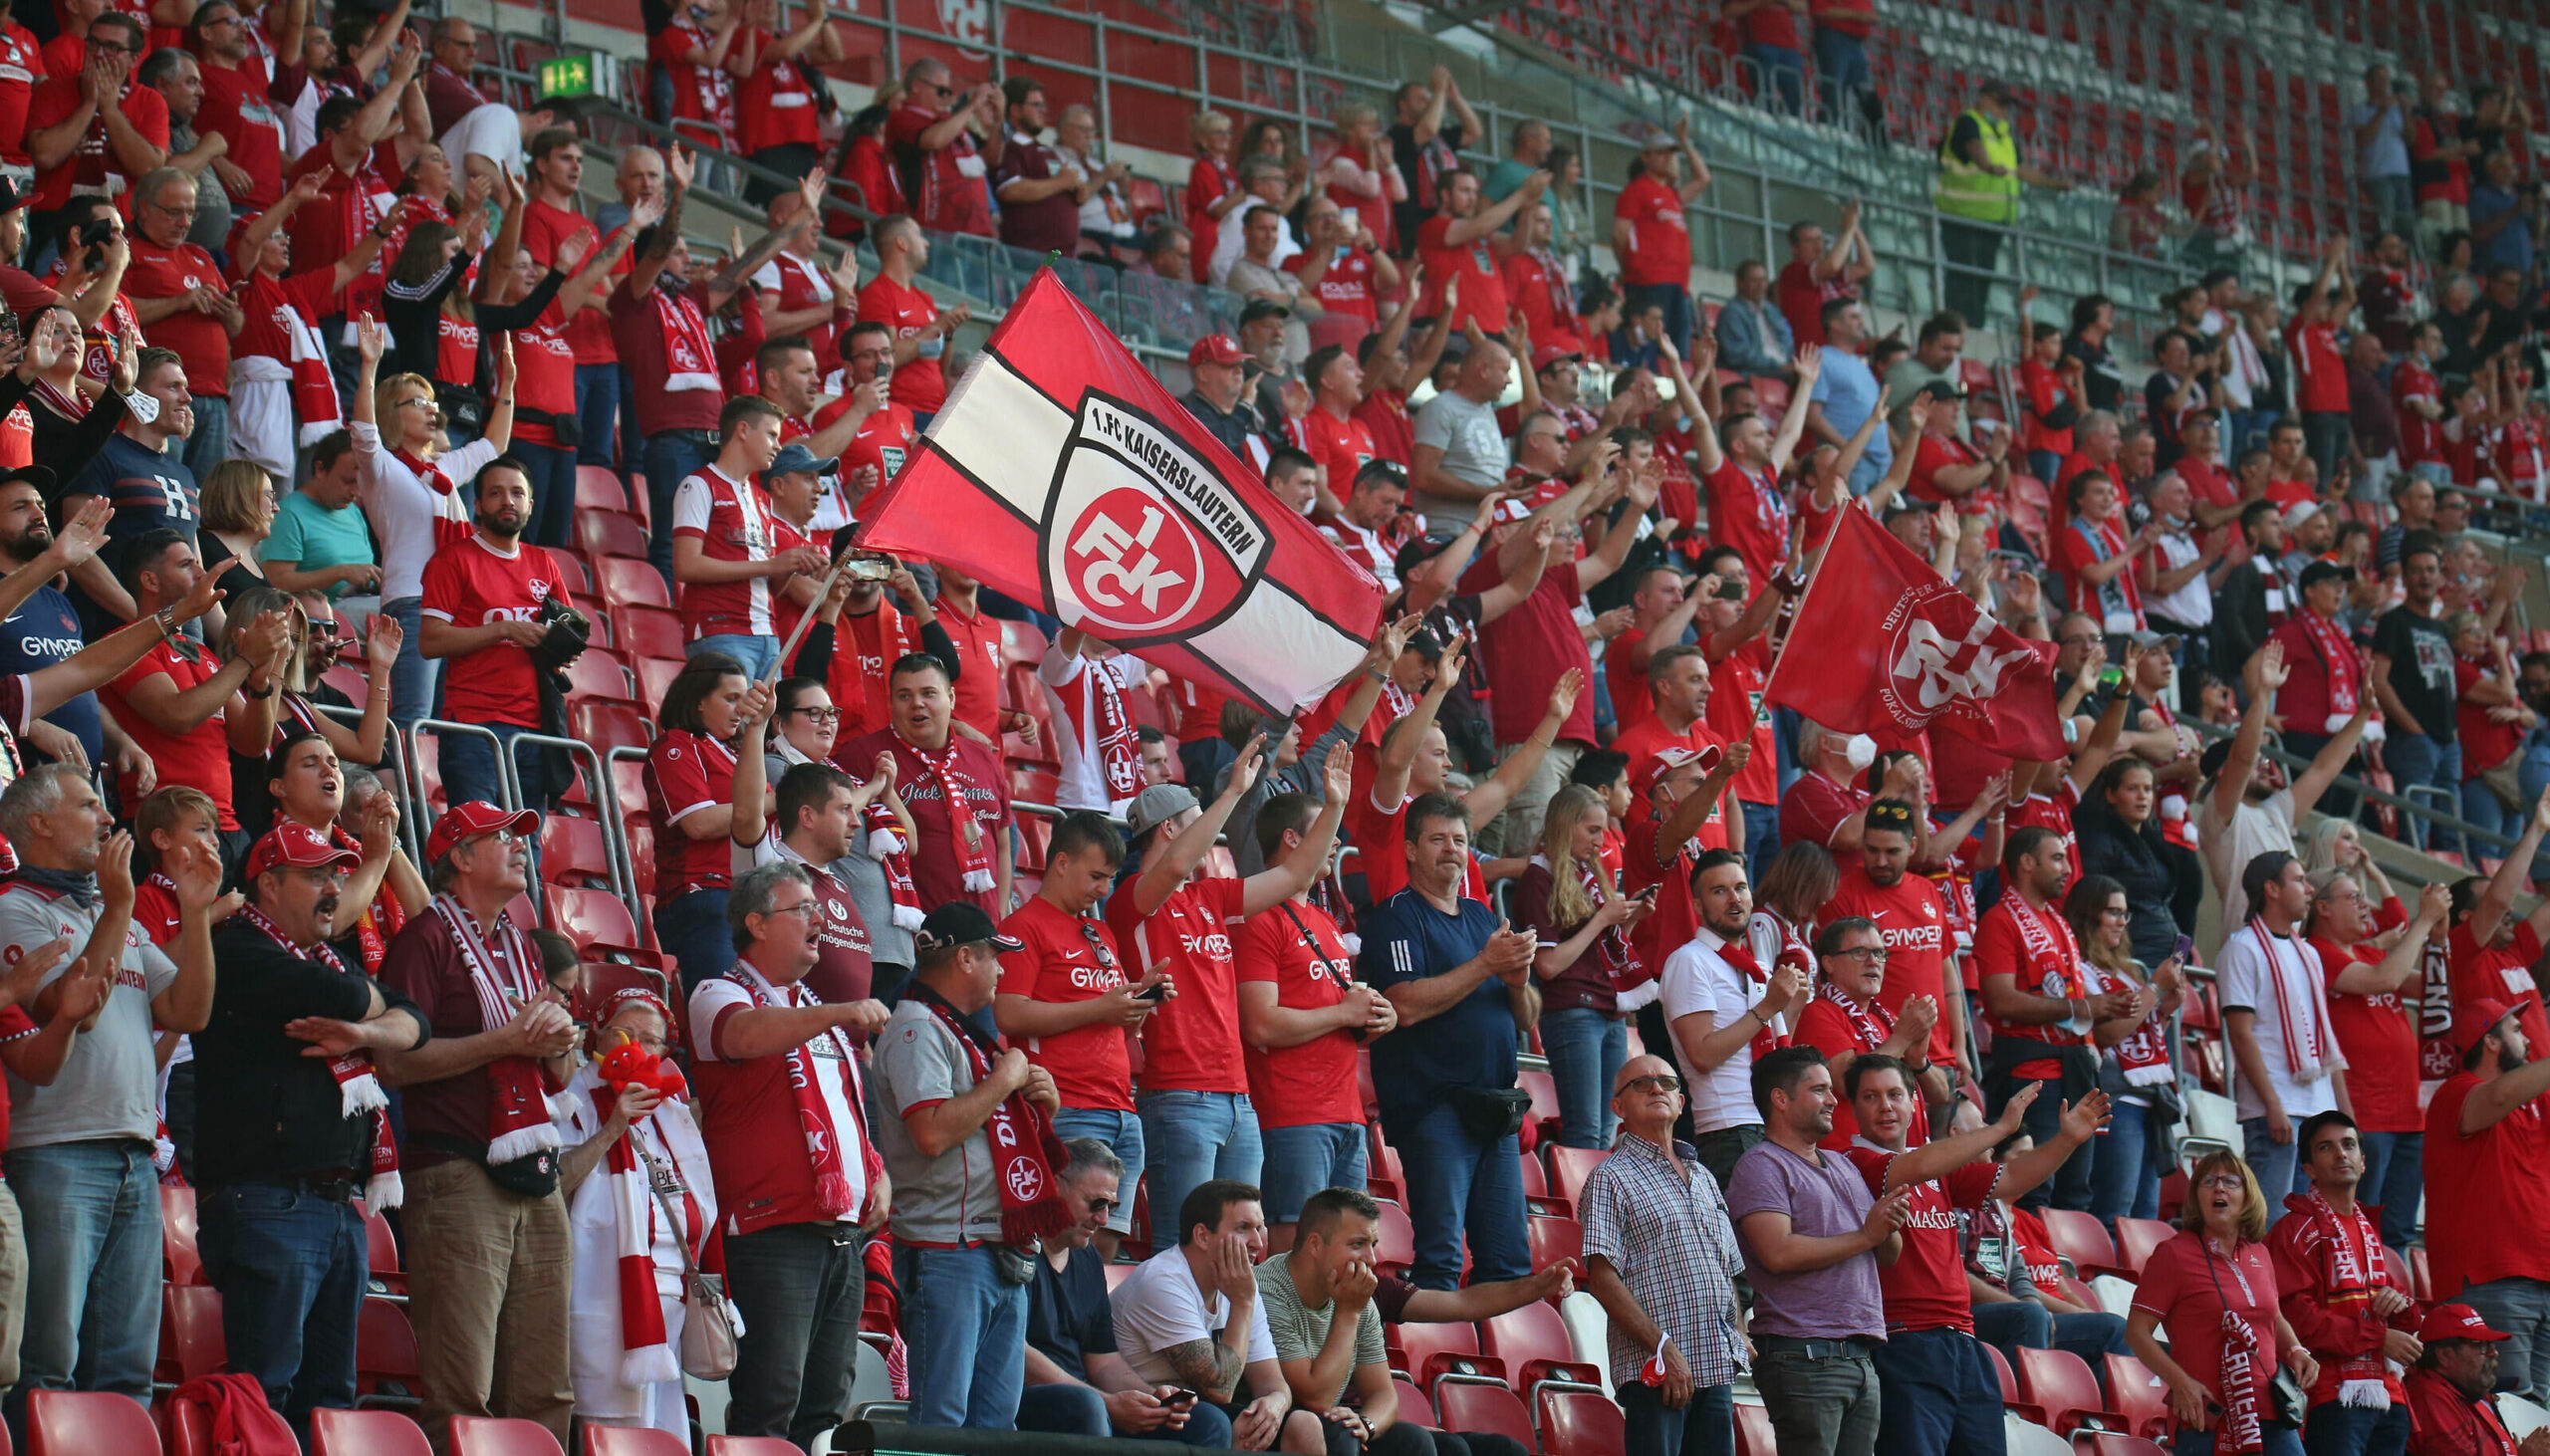 Nach Fan-Empfang: Kaiserslautern droht Bestrafung durch den DFB